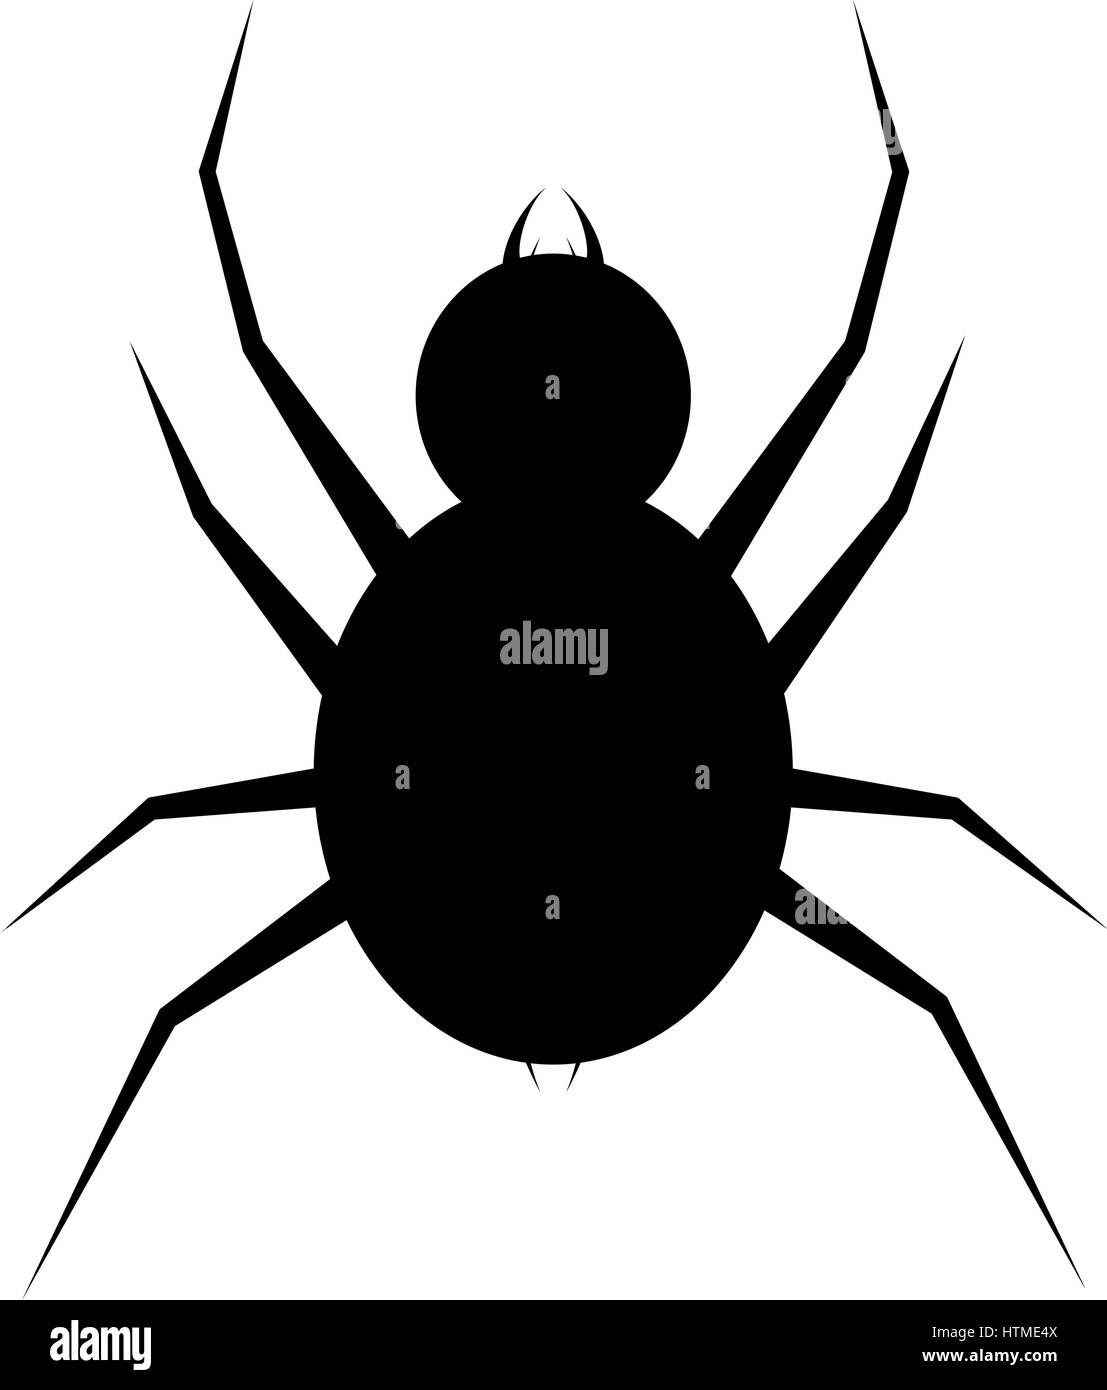 Spinne-Logo-Vorlage. Spinne-Symbol. Flache Spinne Stock-Vektorgrafik - Alamy